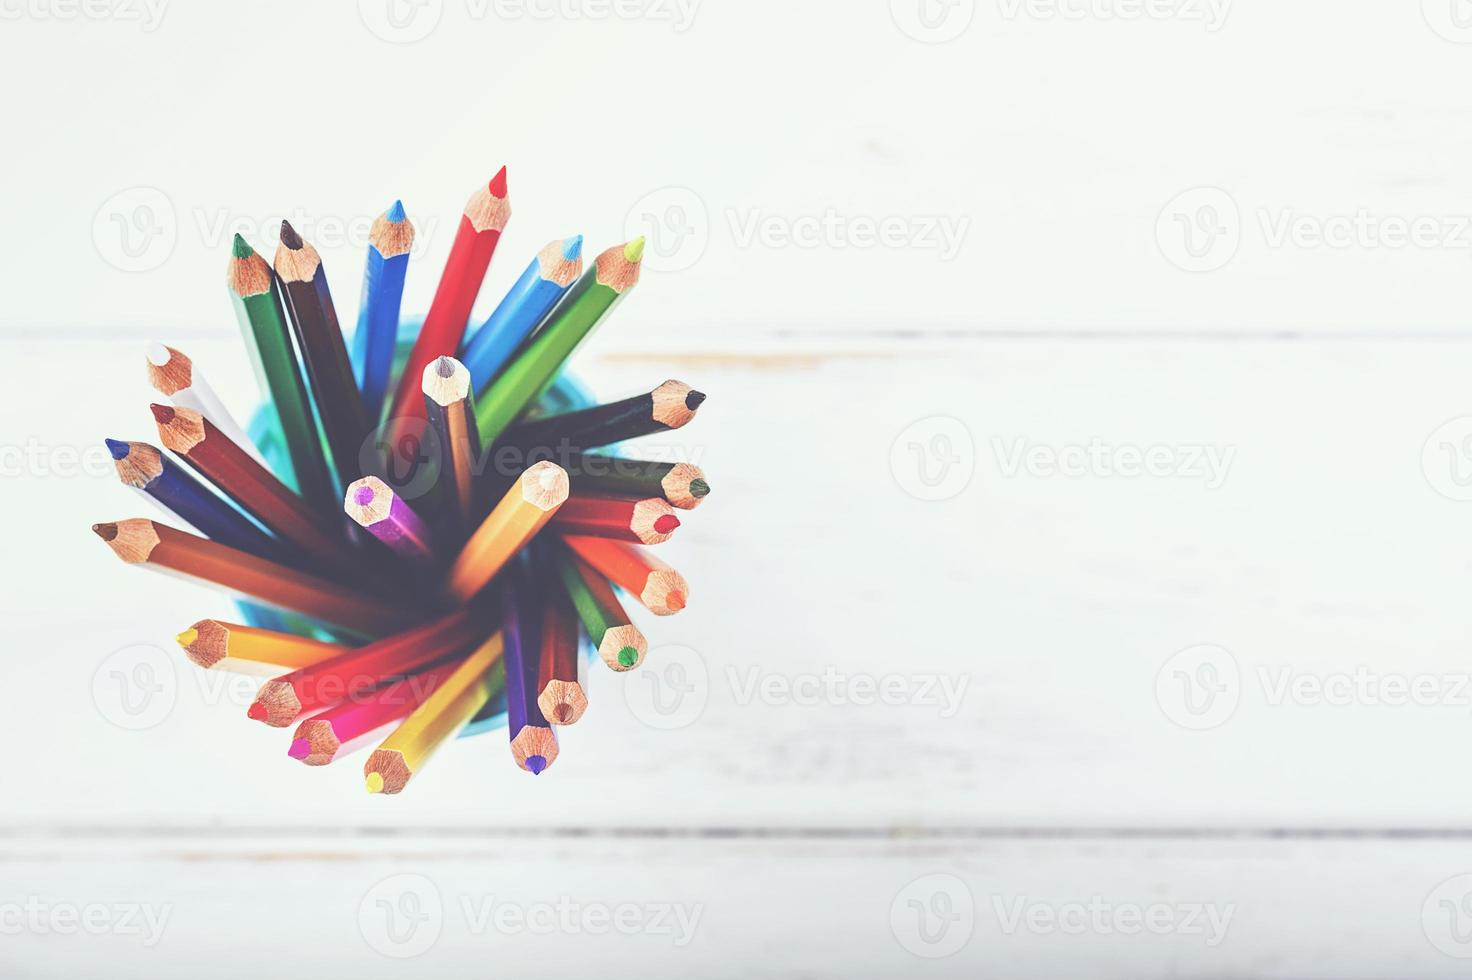 färgpennor på ett träbord foto